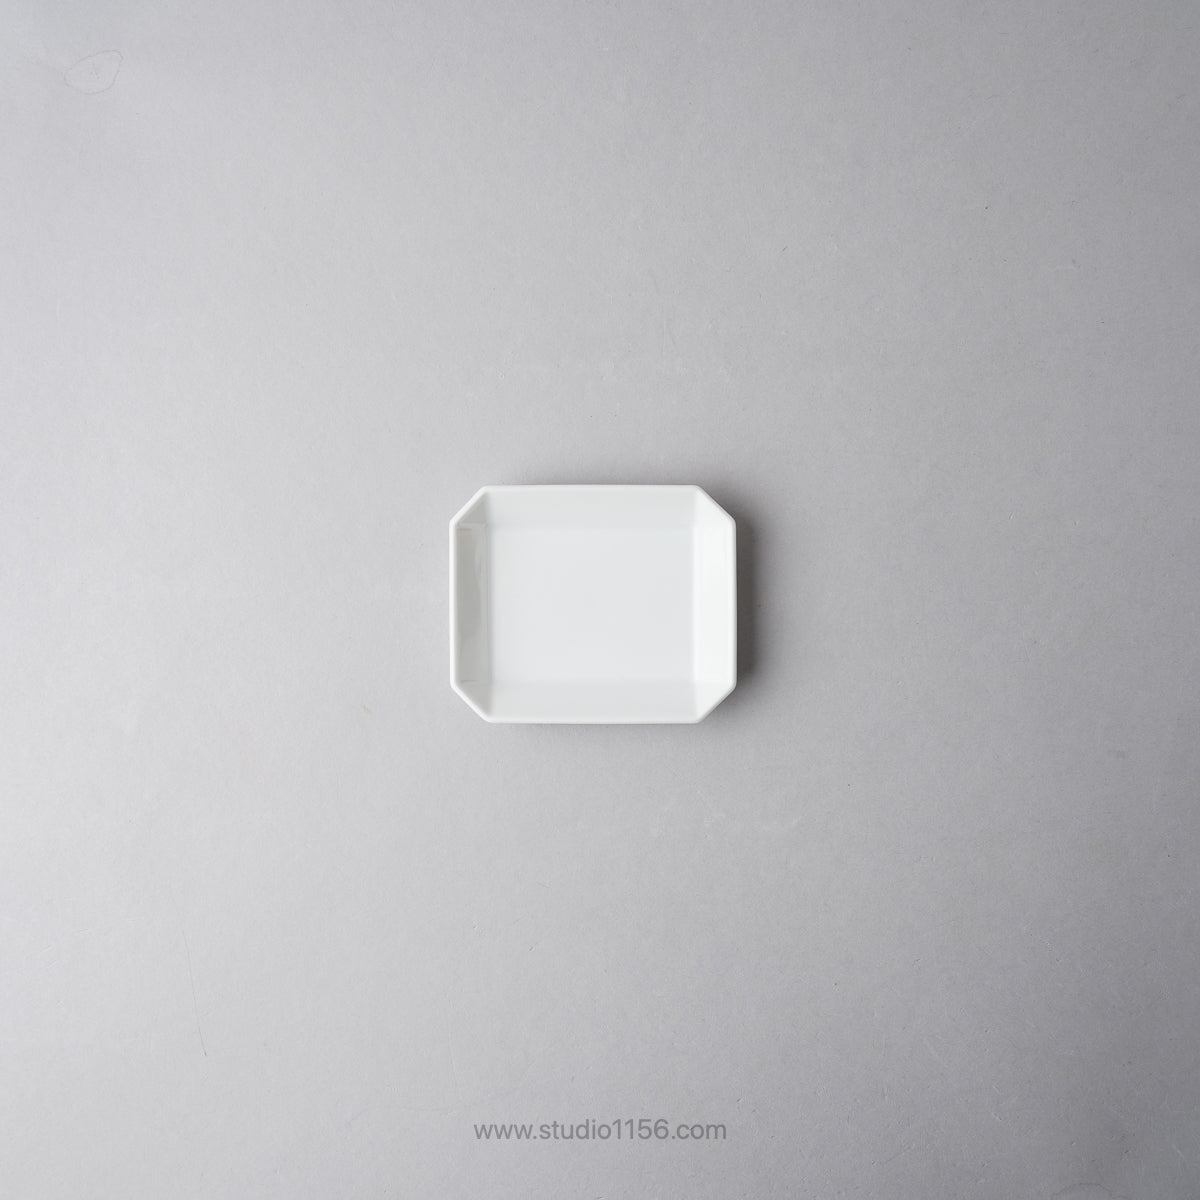 有田焼 スクエアプレート プレーン ホワイト / TY Square Plate Plain White 90 1616 / Arita Japan Studio1156